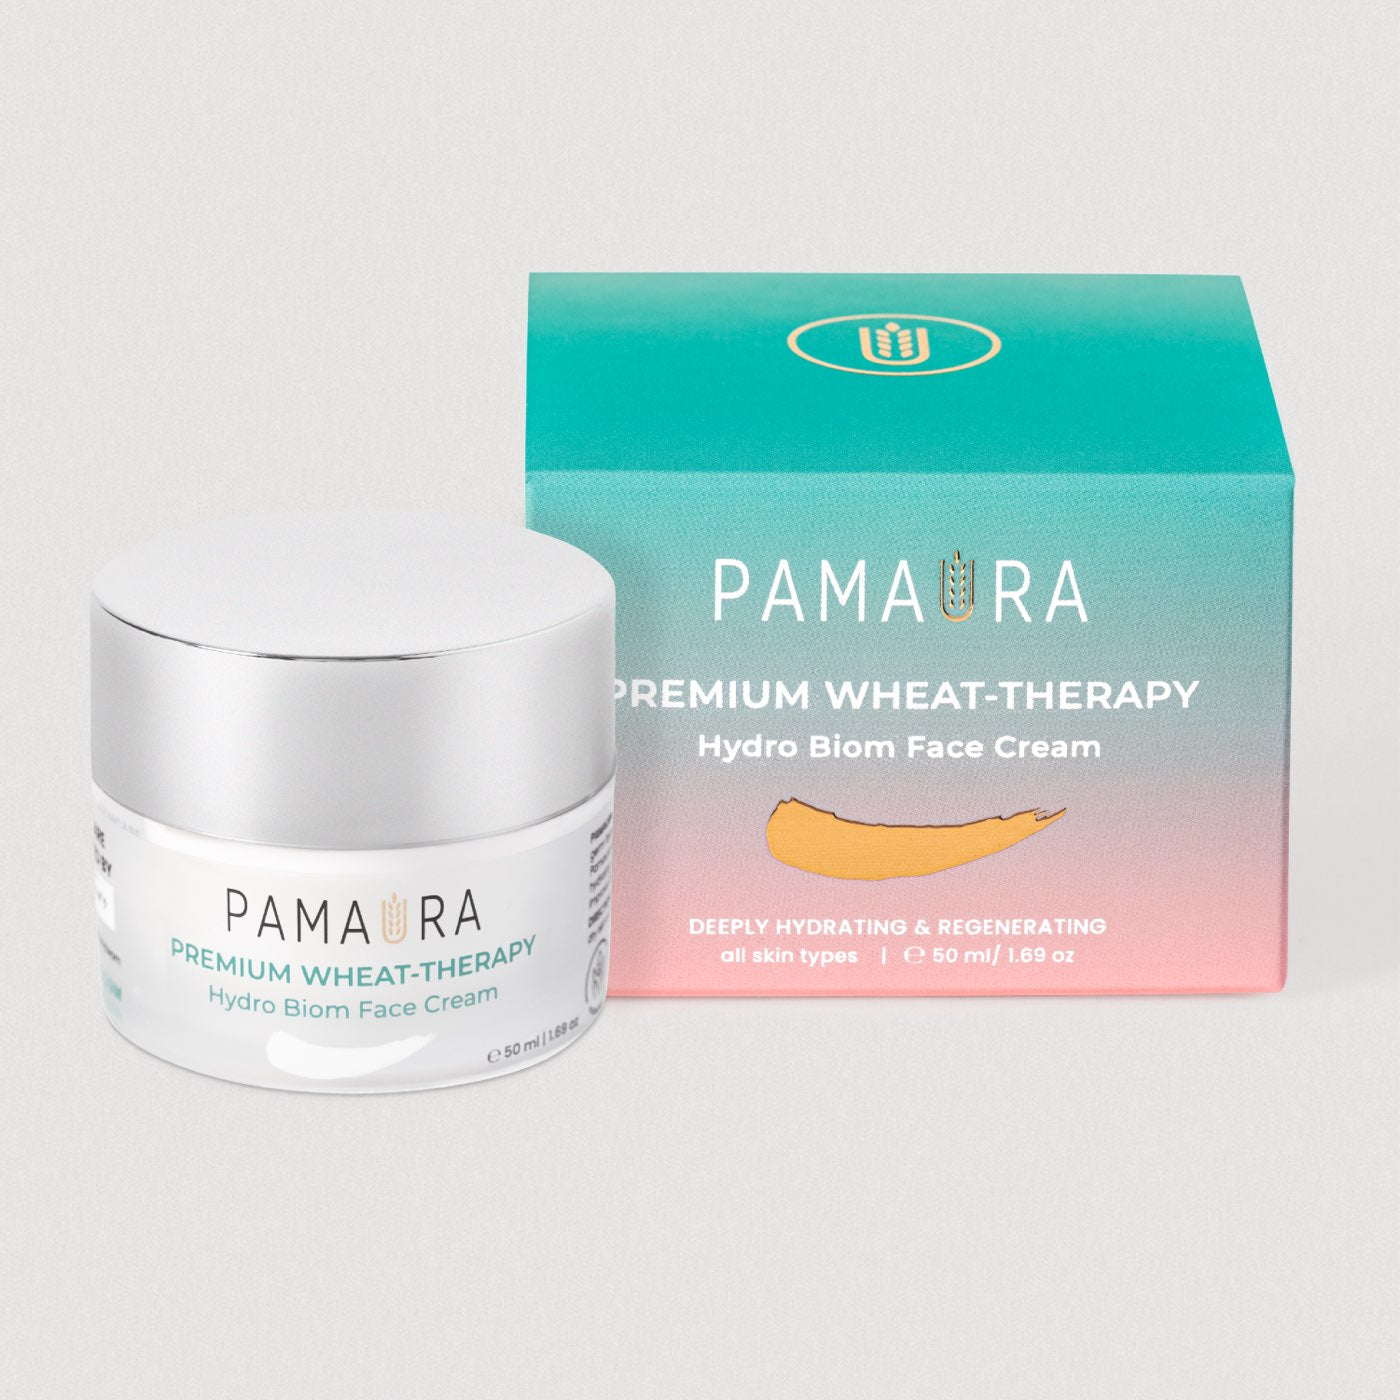 Pamaura Premium Wheat Therapy